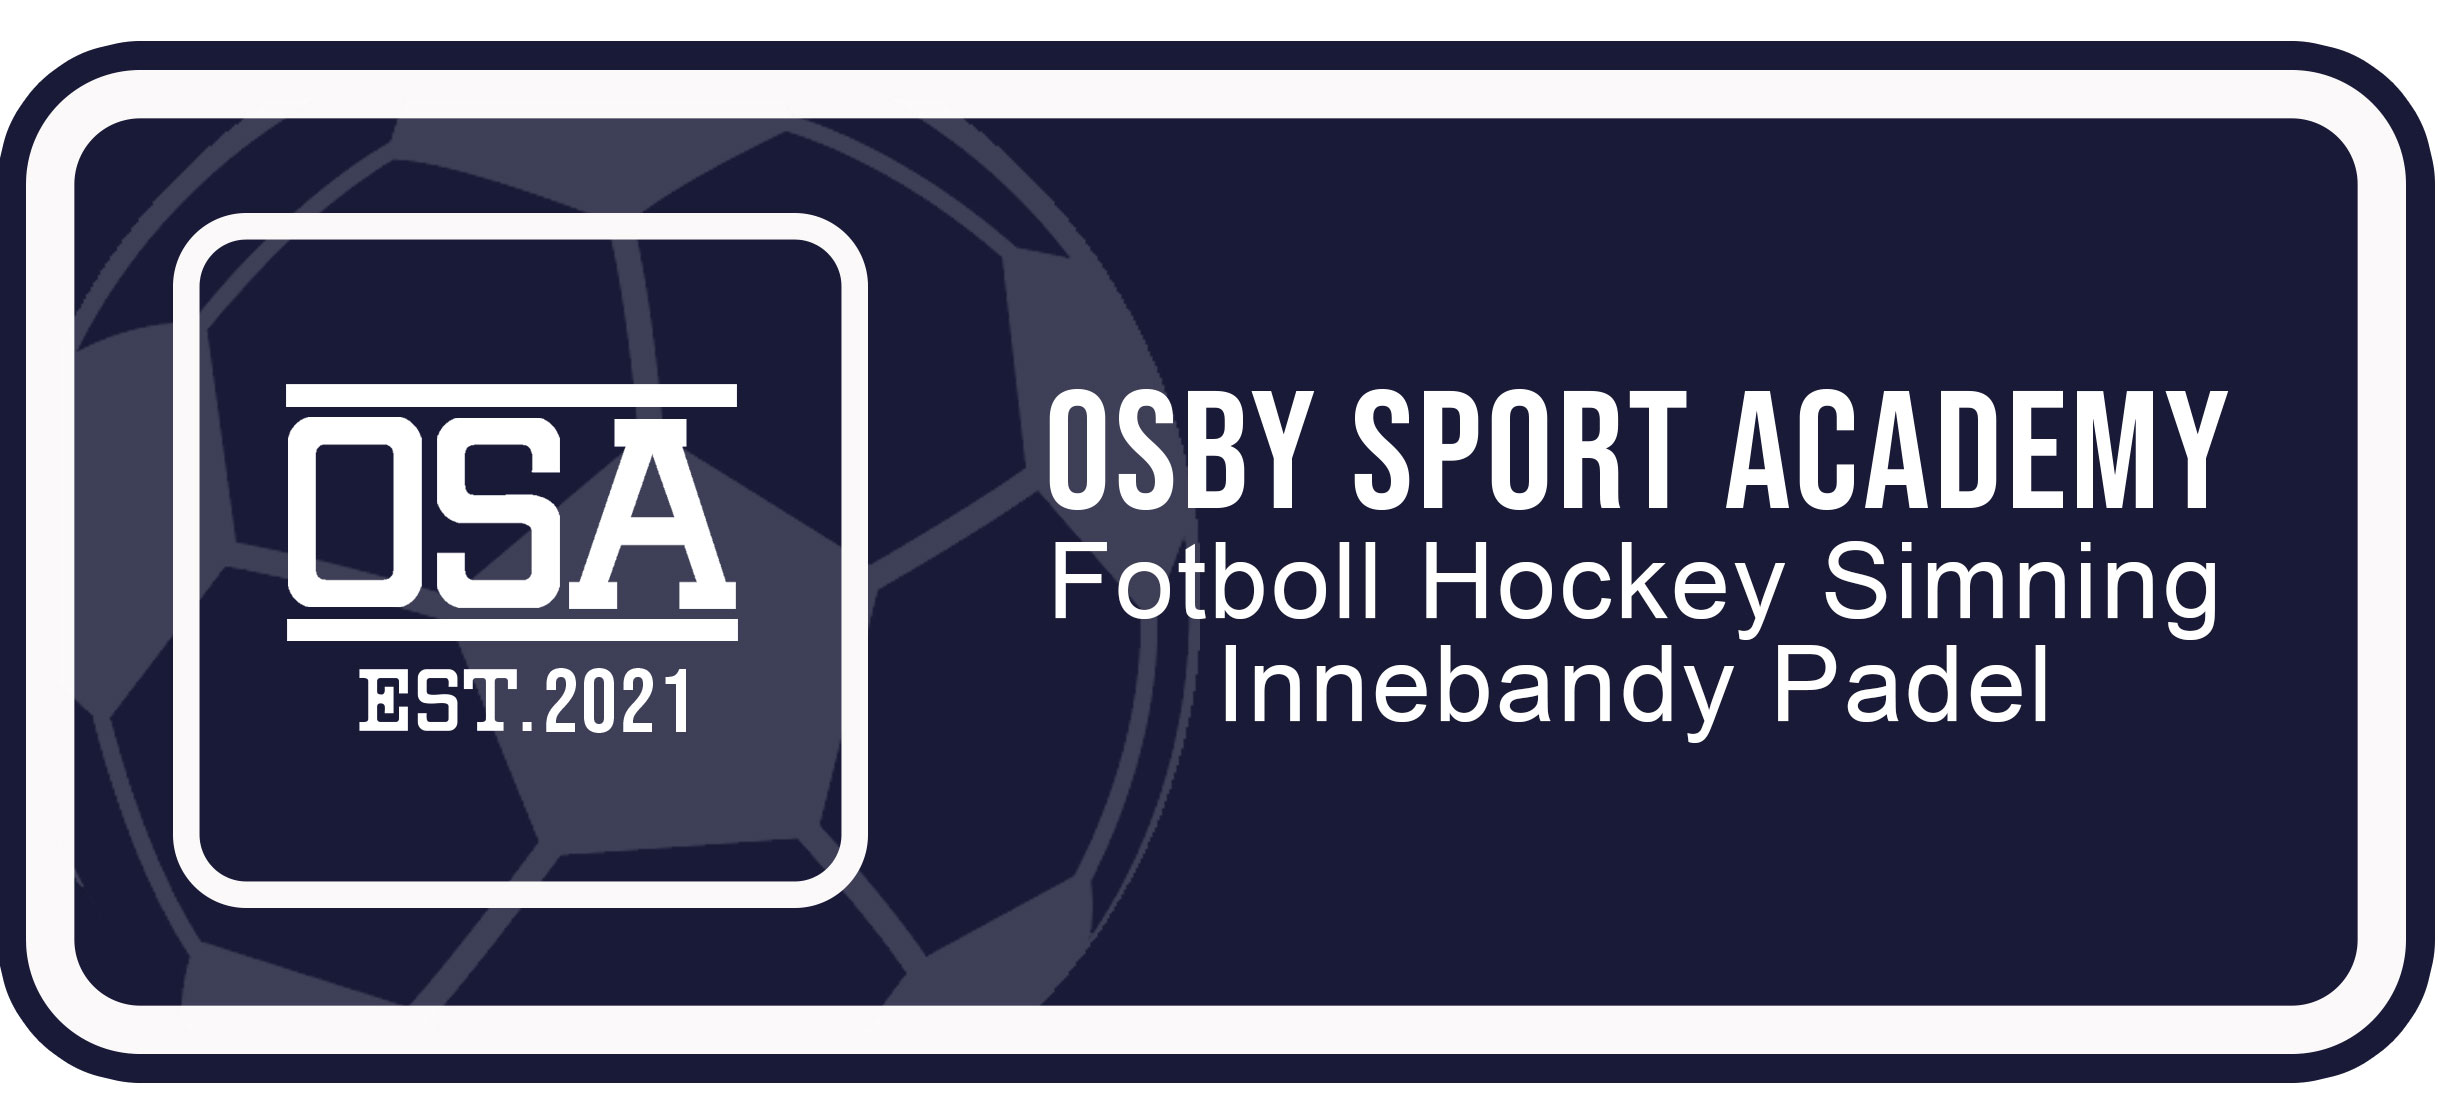 Osby Sport Academy